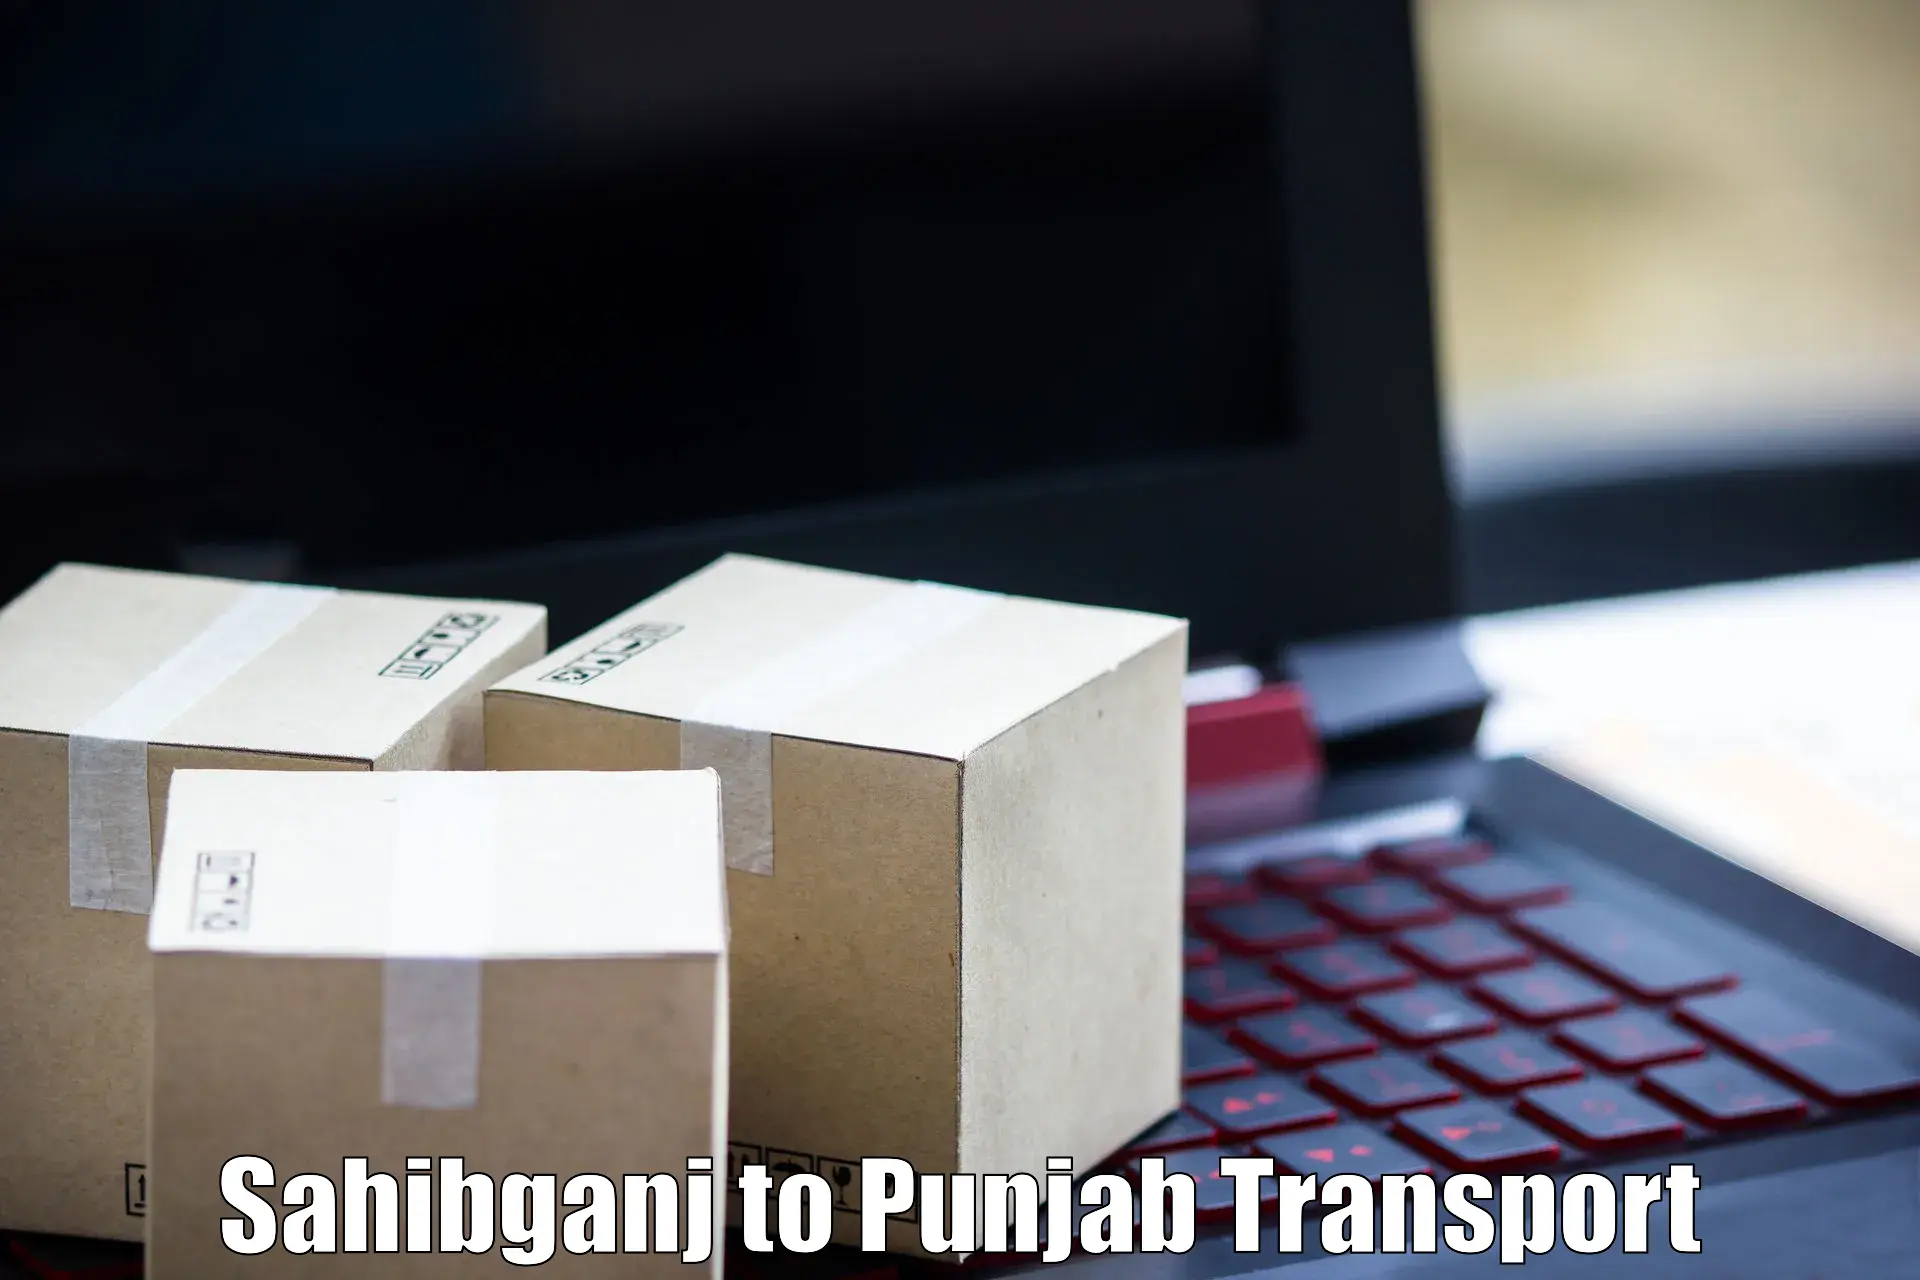 Truck transport companies in India Sahibganj to Mandi Gobindgarh